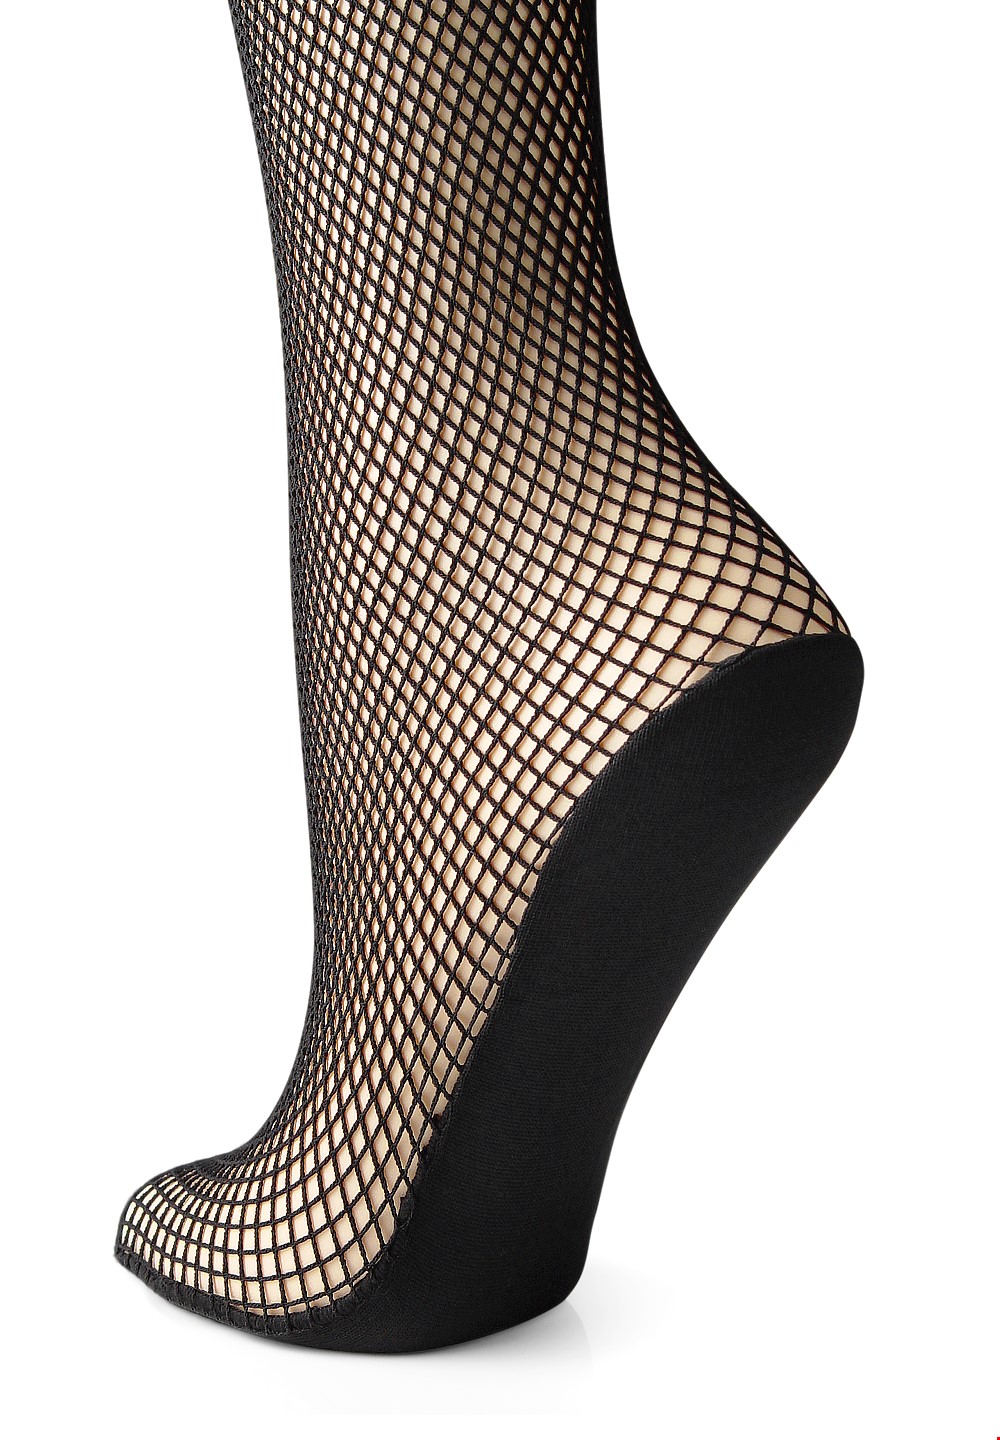 Ankle Length Fishnet Socks-Black